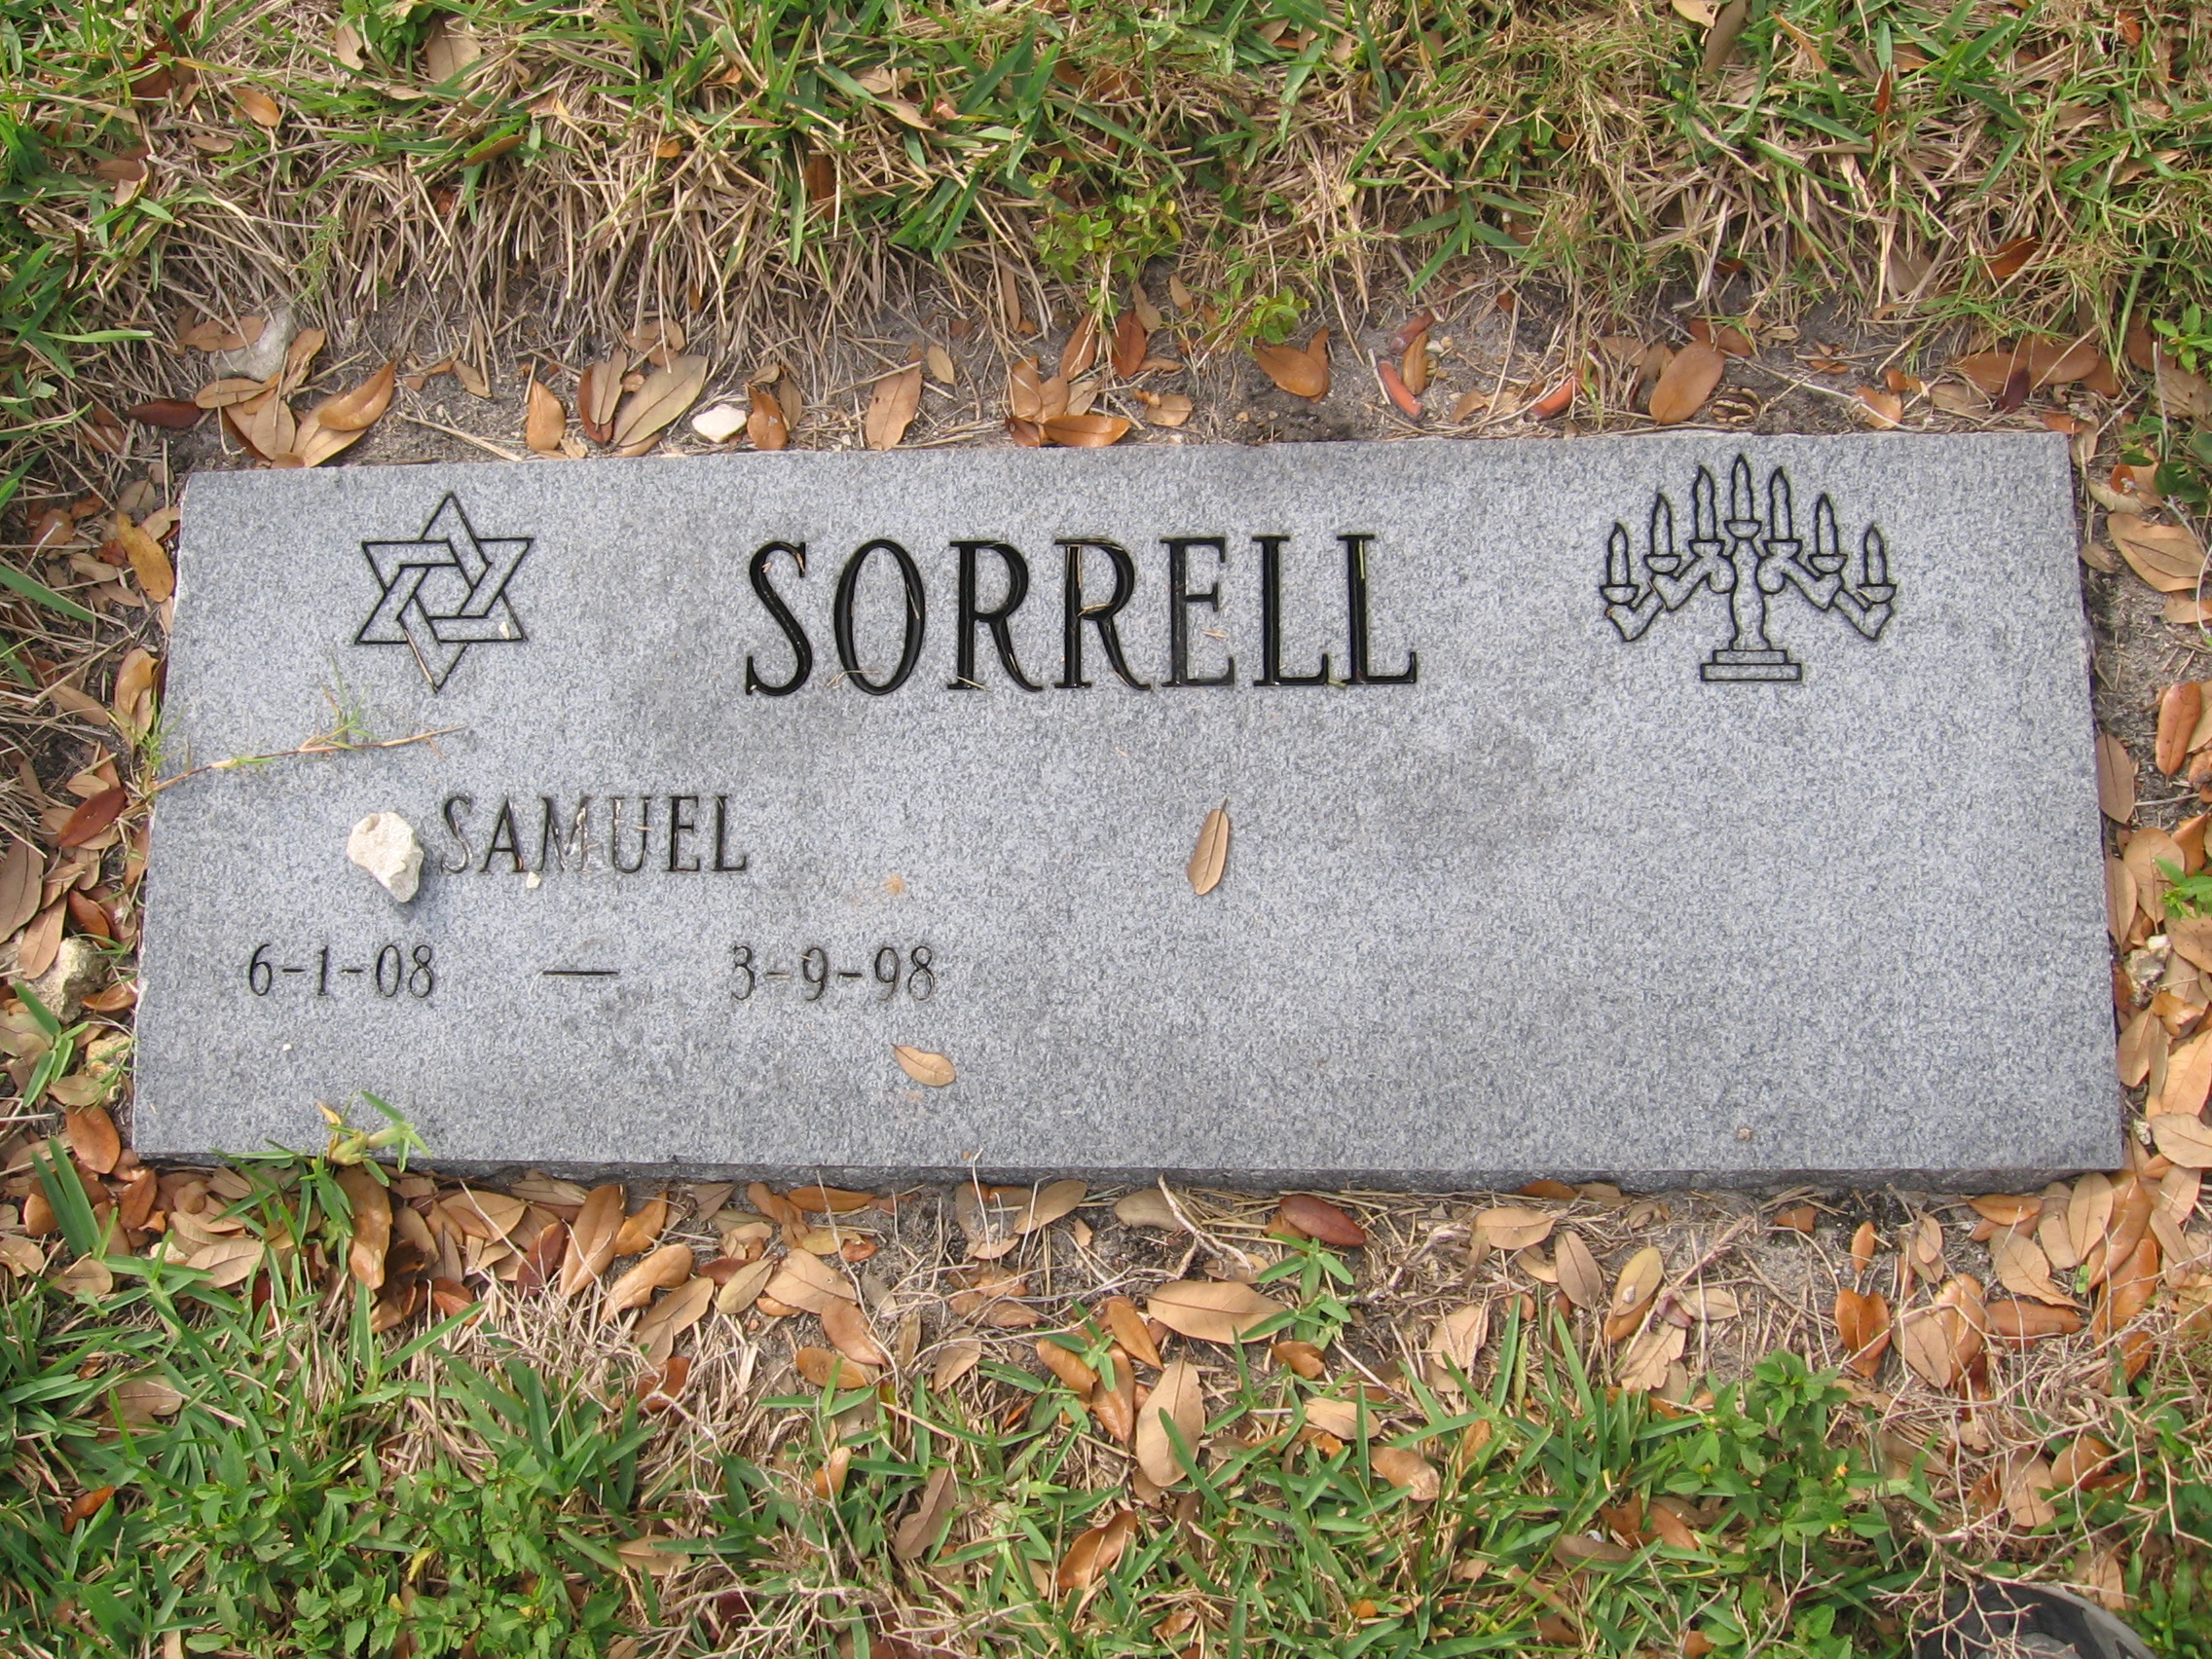 Samuel Sorrell